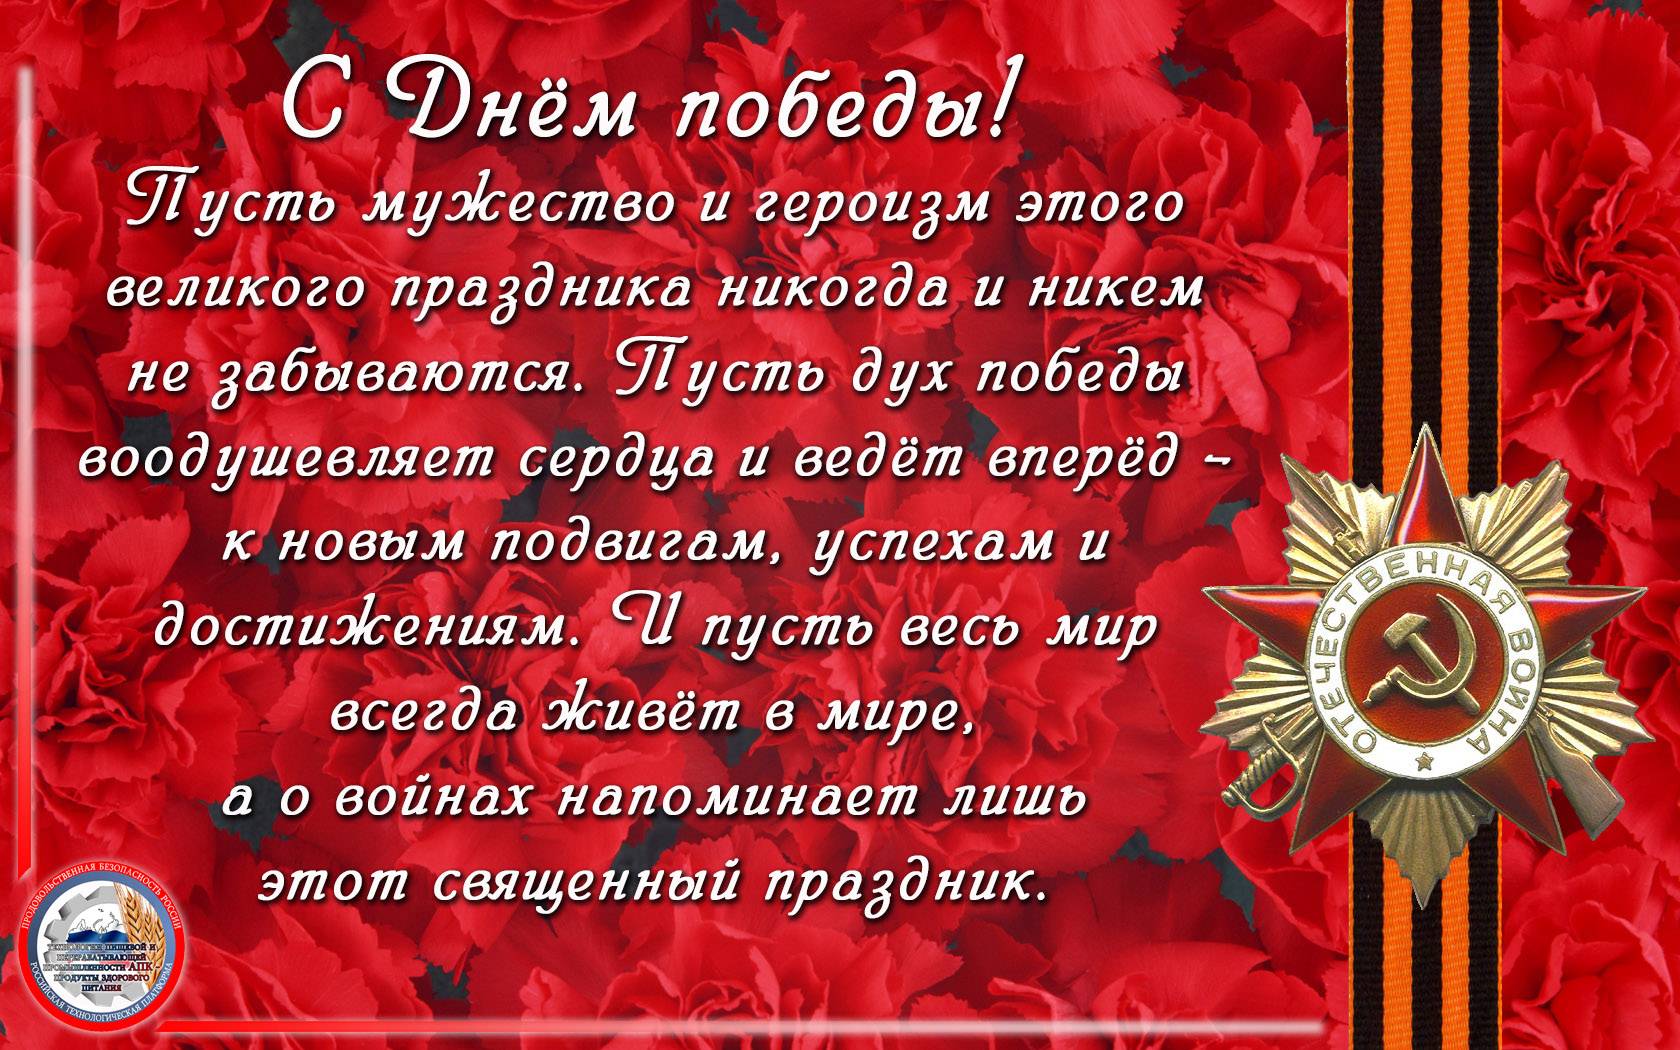 В татарстане представили программу мероприятий, посвященных 75-й годовщине победы в великой отечественной войне  - волга ньюс. поволжье